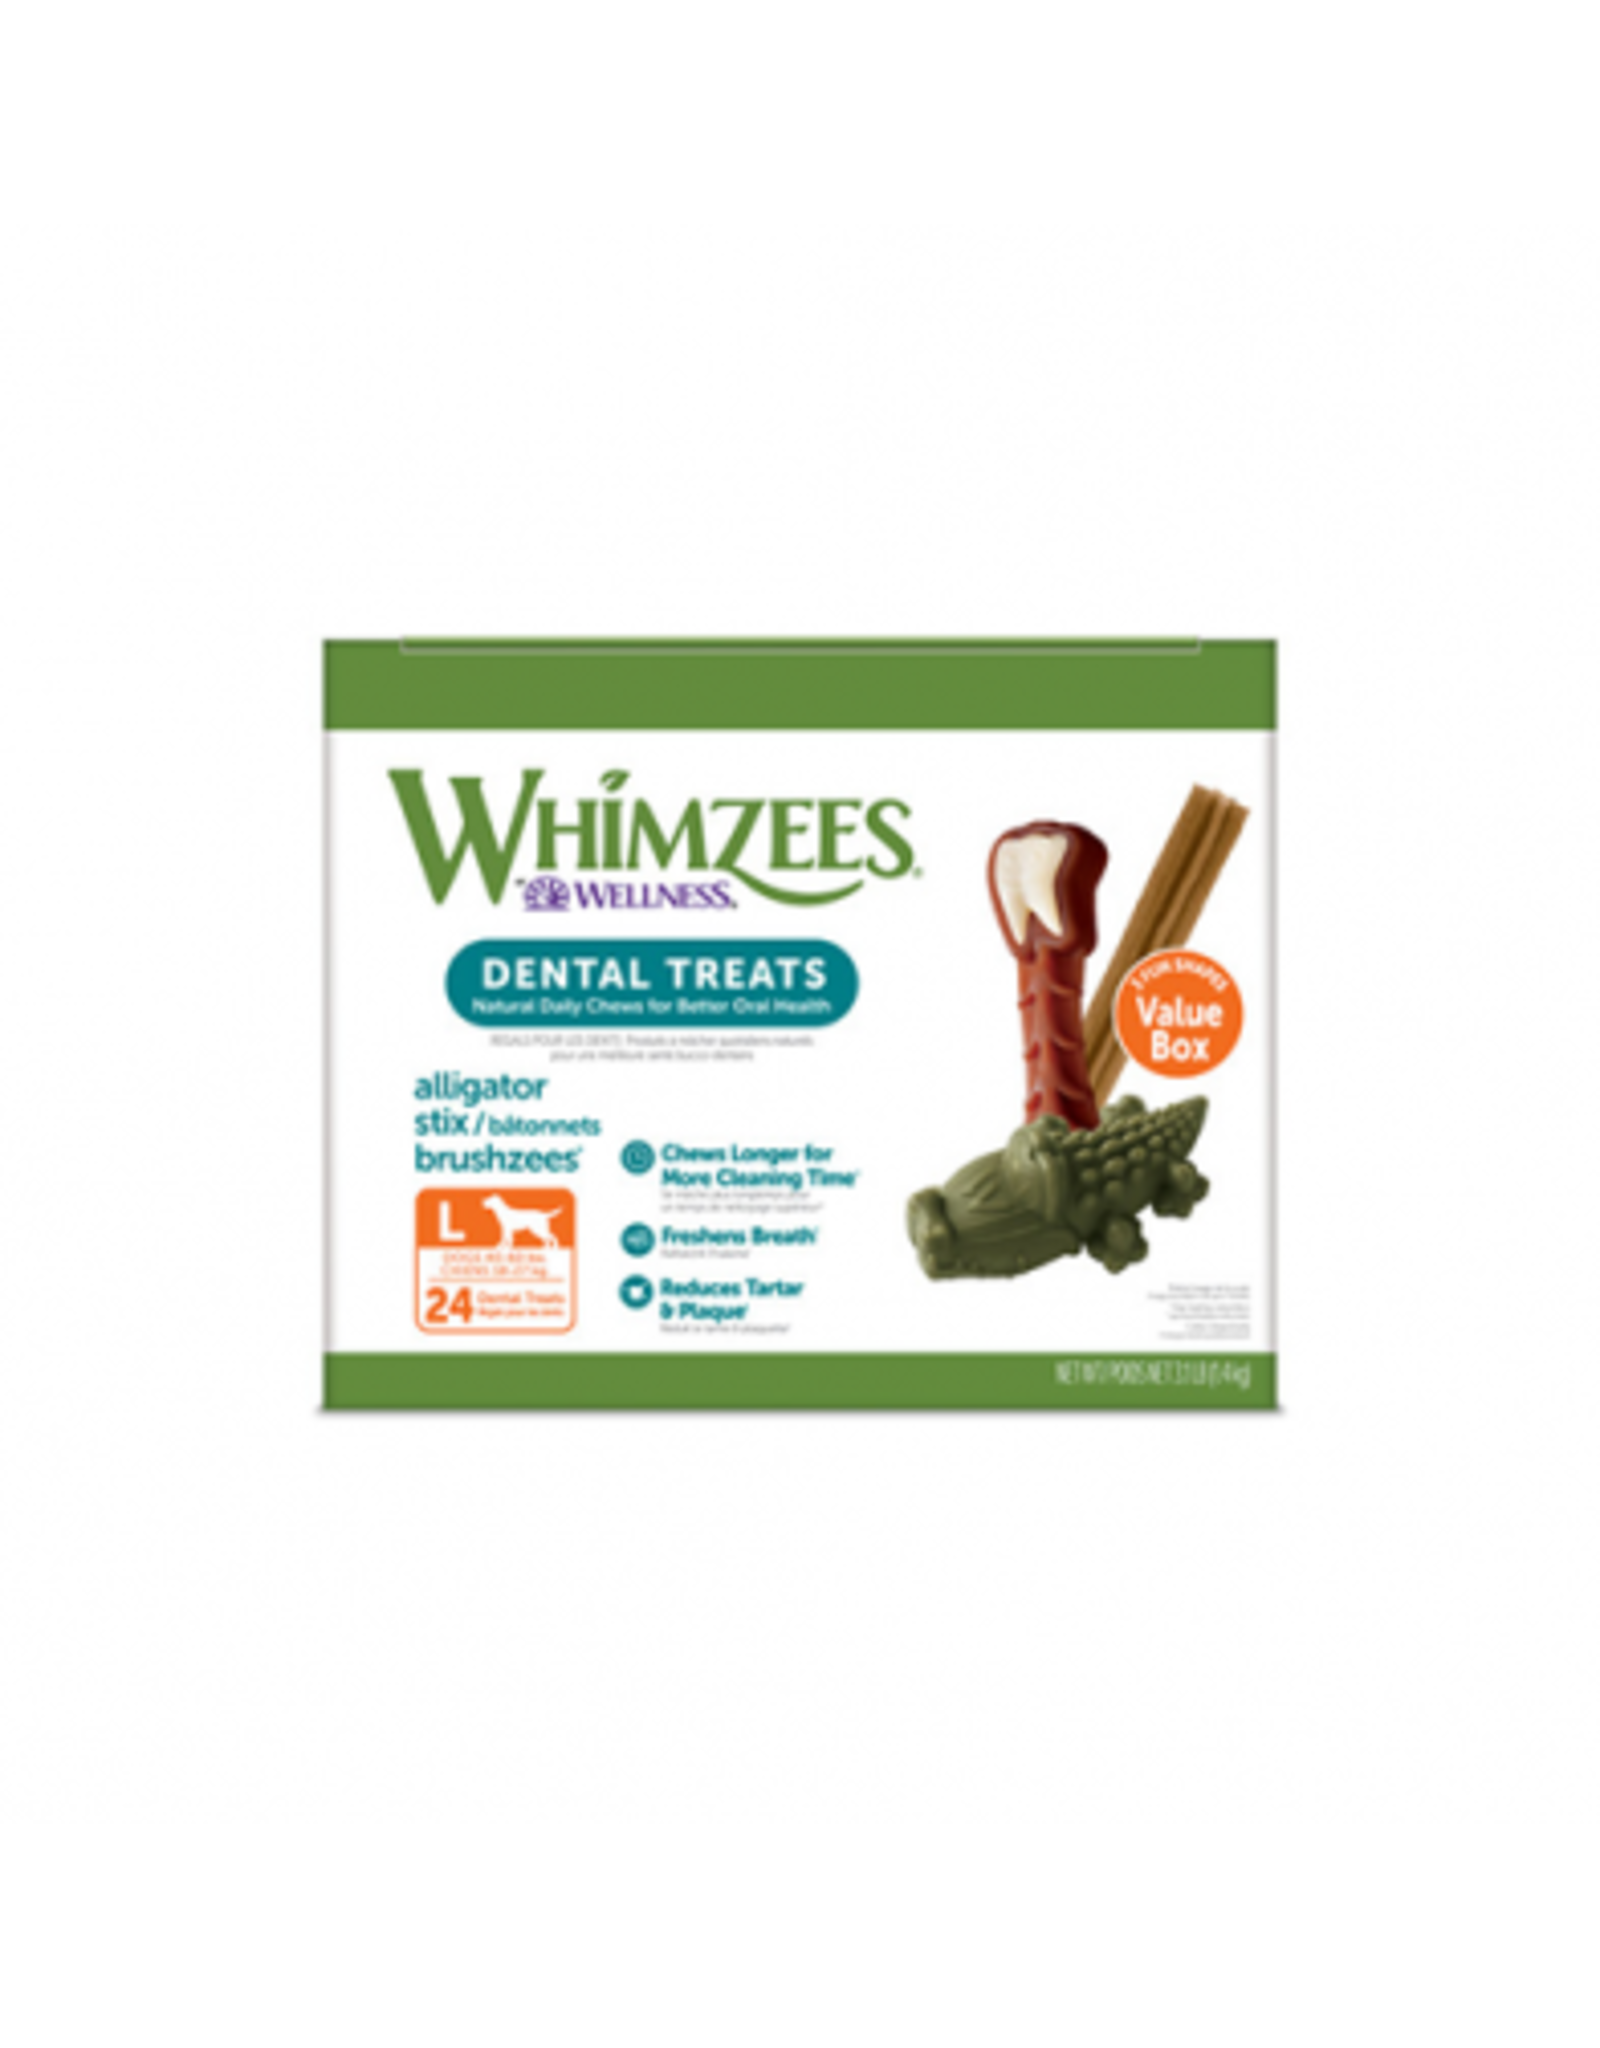 paragon pet products Whimzees Boite Valeur mixte  L (24)